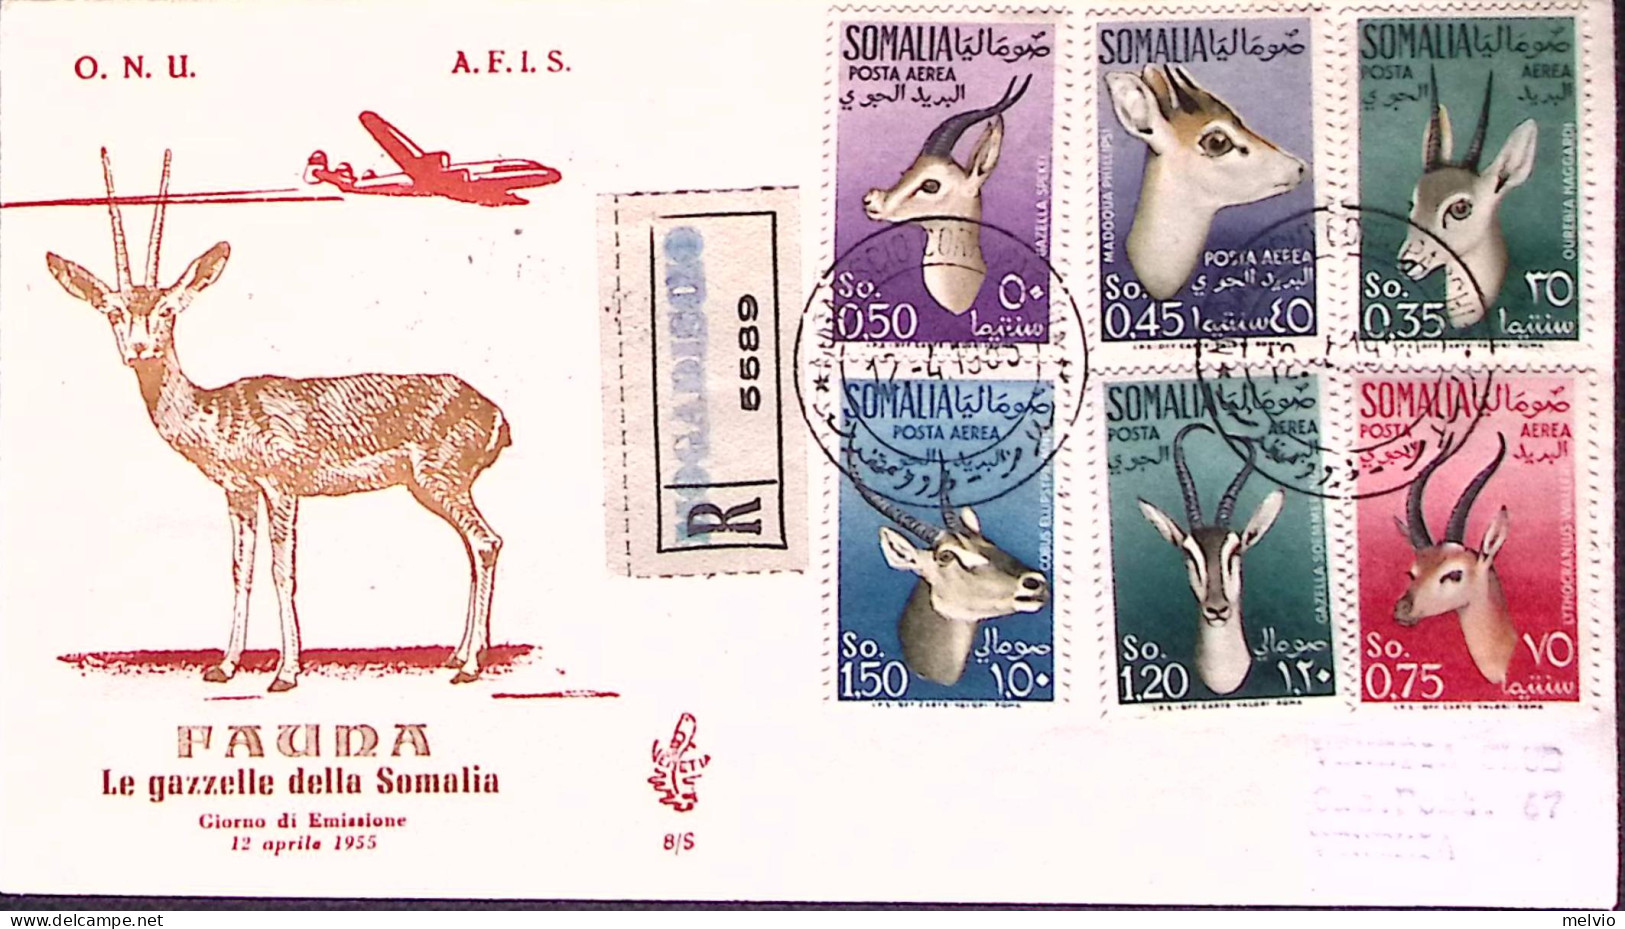 1955-SOMALIA A.F.I.S. Posta Aerea Gazzelle Su Fdc Venetia Raccomandata - Somalia (AFIS)